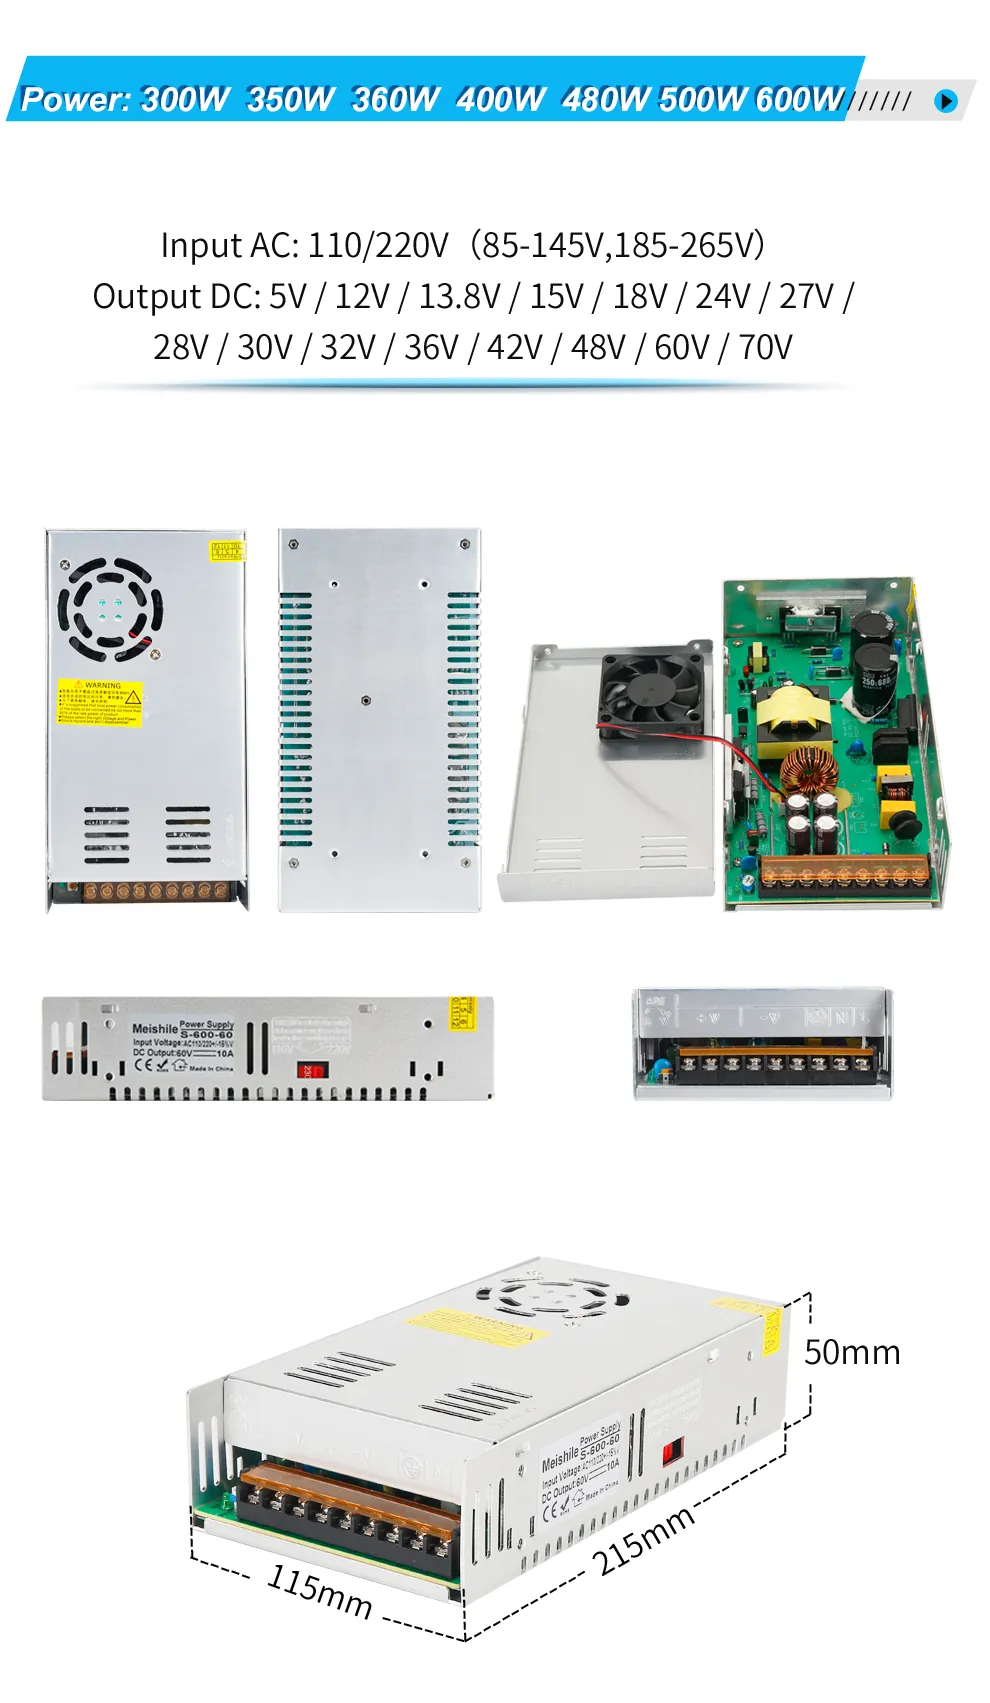 Wechselstrom bis DC 60V 8A 480W Schaltransfertransformator für CNC -industrielle elektronische elektronische Geräte usw.